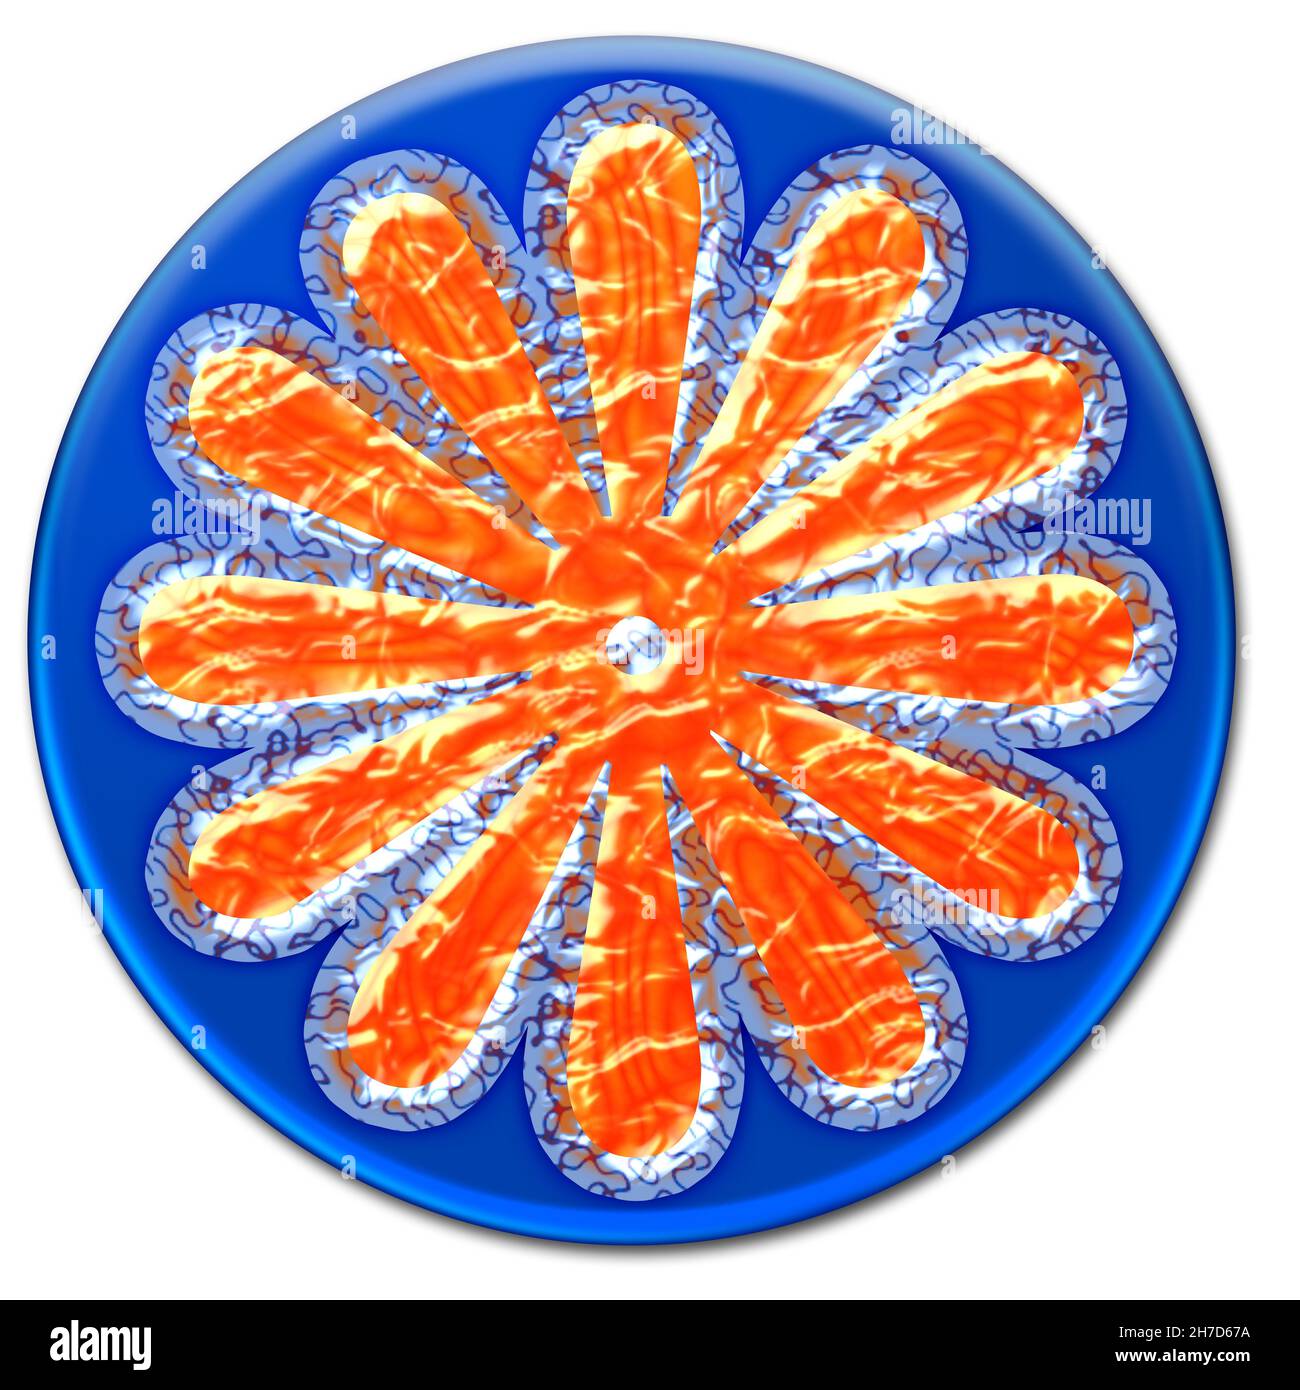 Fantastische surrealistische Blumendarstellung auf einem blauen, glasigen Knopf, isoliert auf weißem Hintergrund Stockfoto